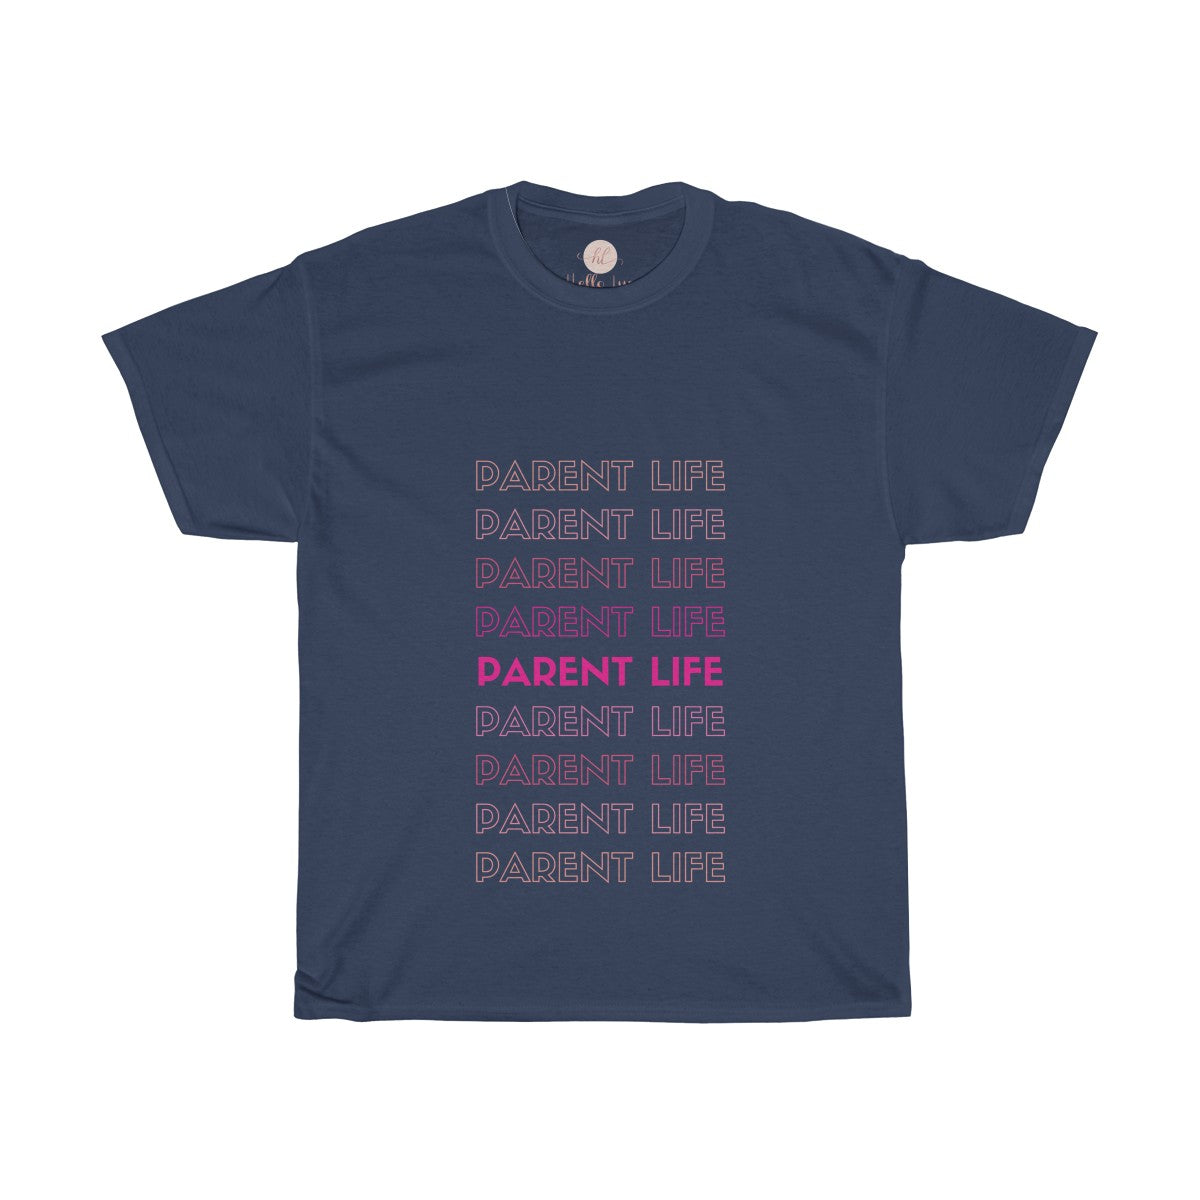 Parent Life Tee| Parent Life Shirt| Parents T-shirt|